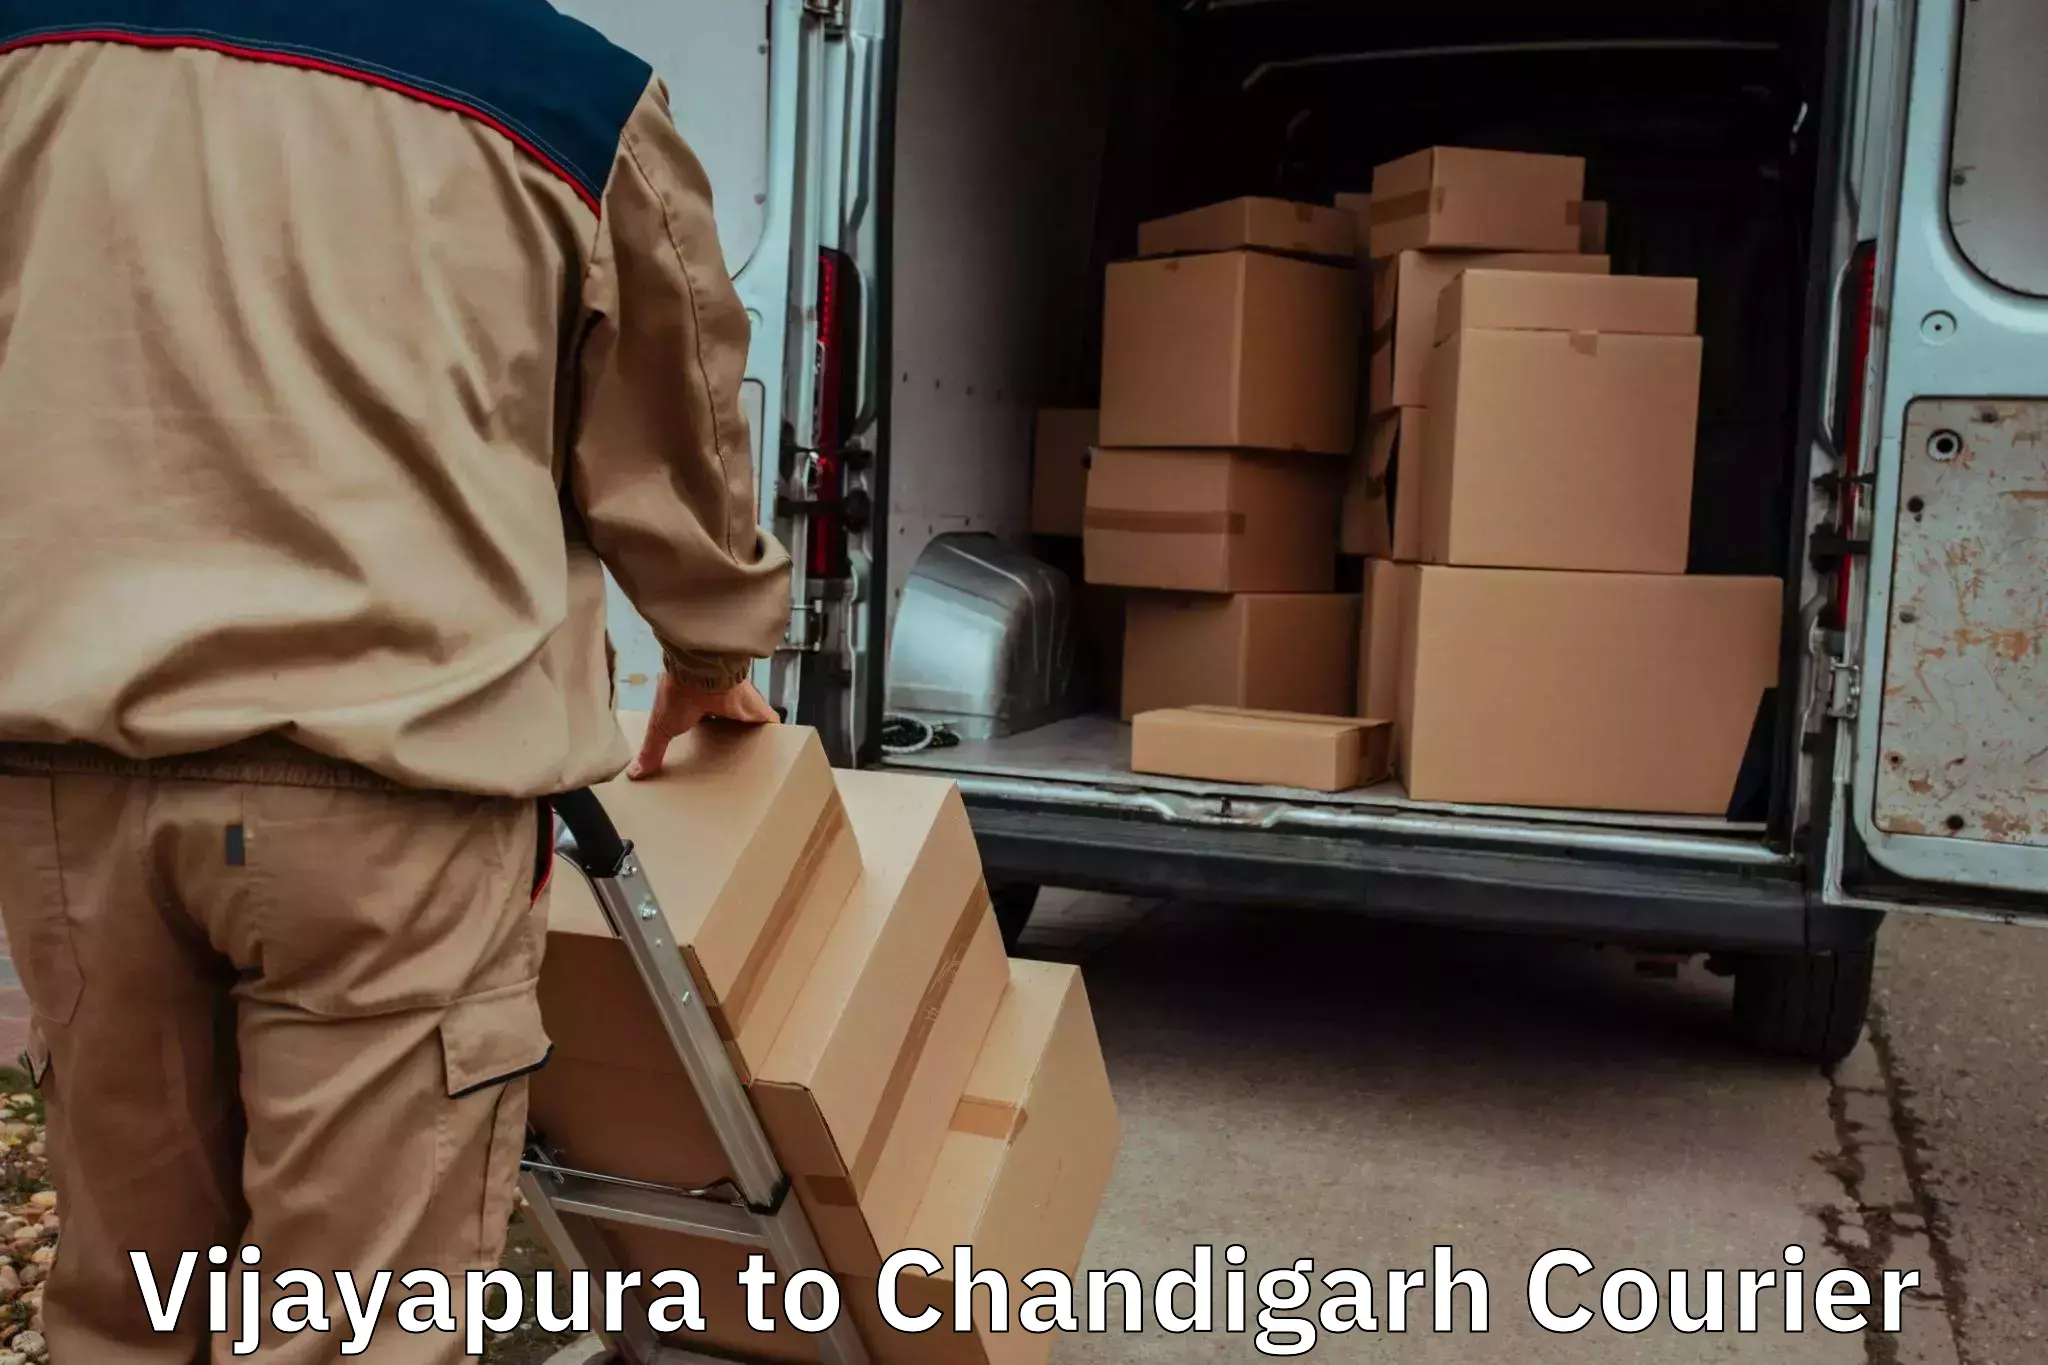 Home shifting experts Vijayapura to Chandigarh